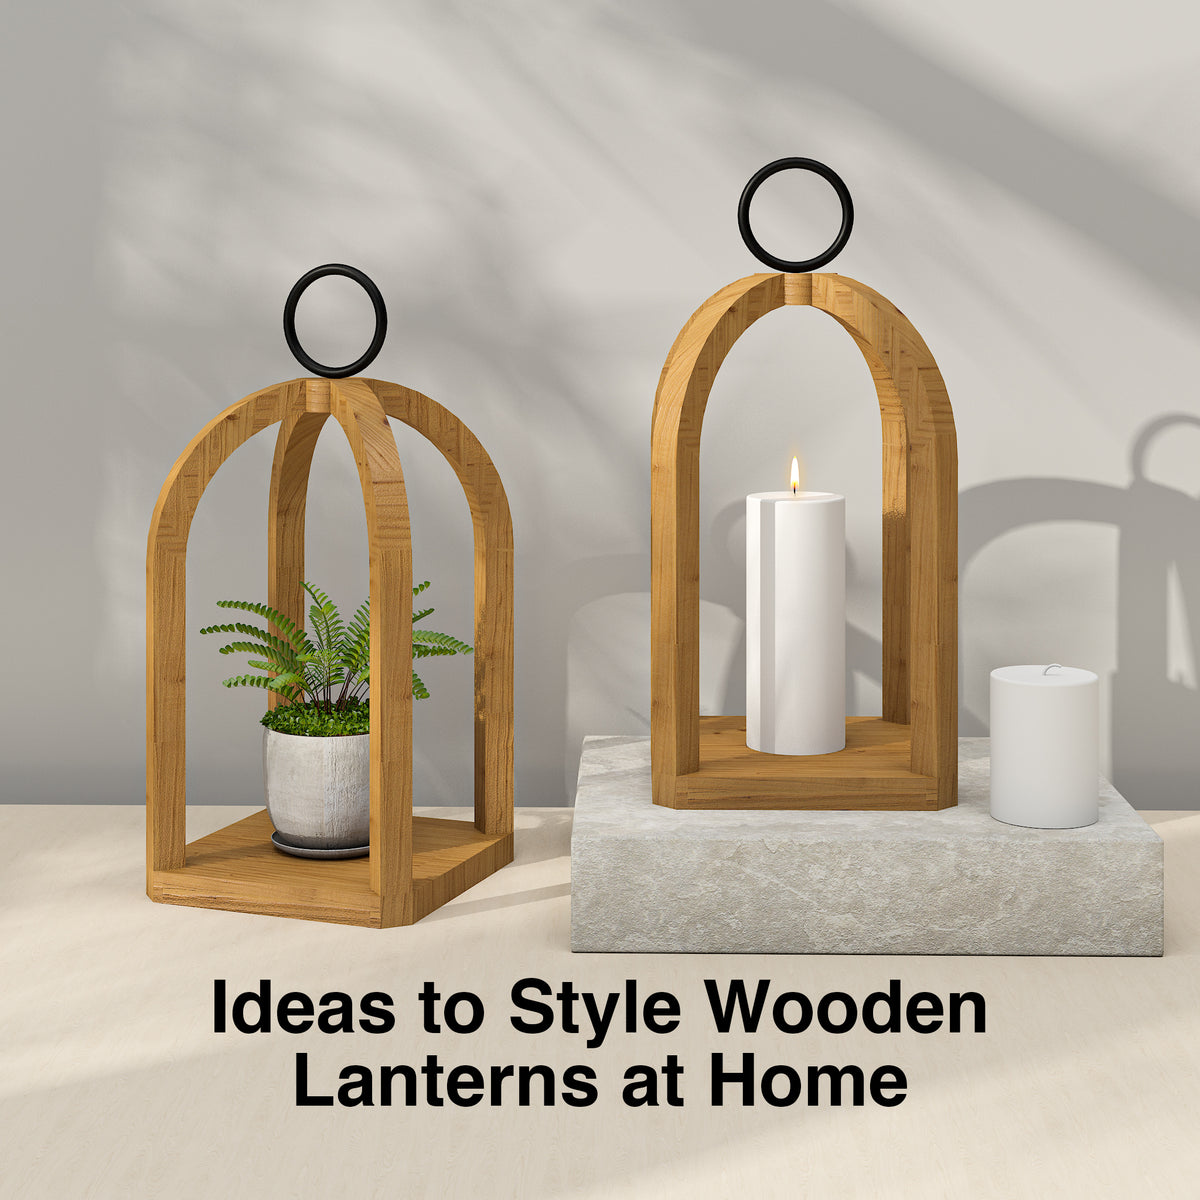 Autour casquette Fermoir wooden lanterns Mottle Horizontal Duchesse